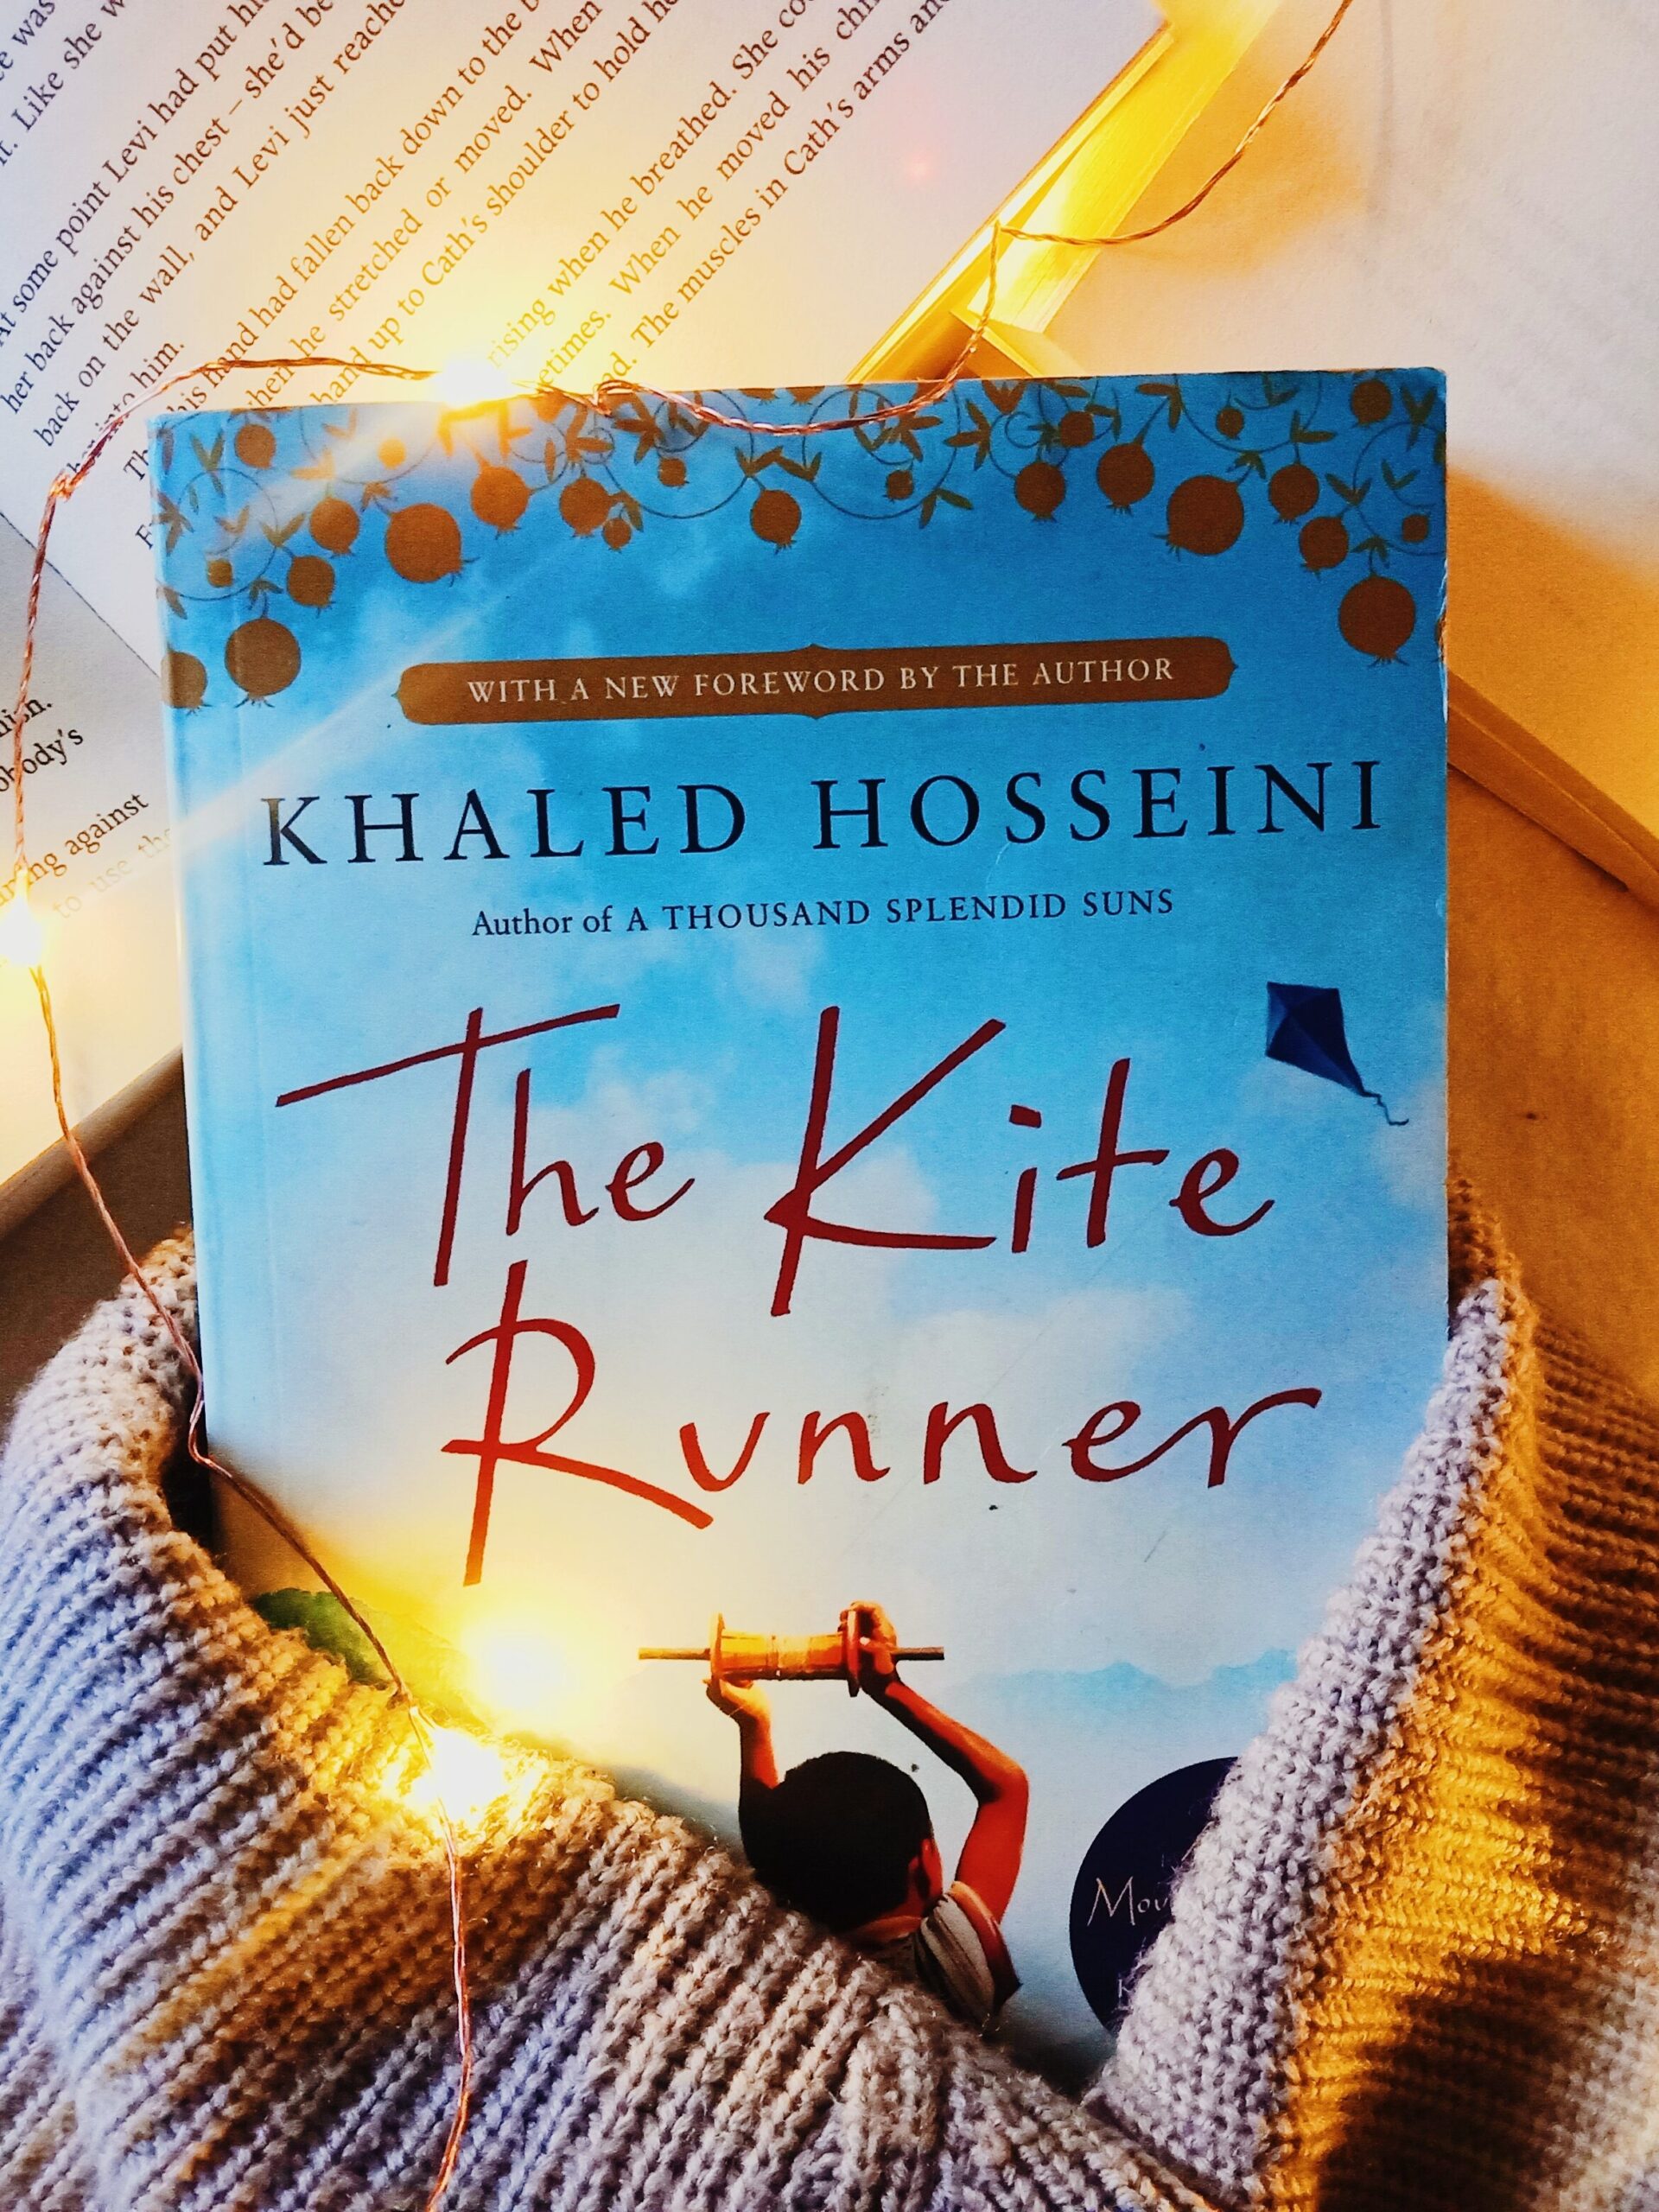 The kite runner by khaled hosseini; good historical fiction books